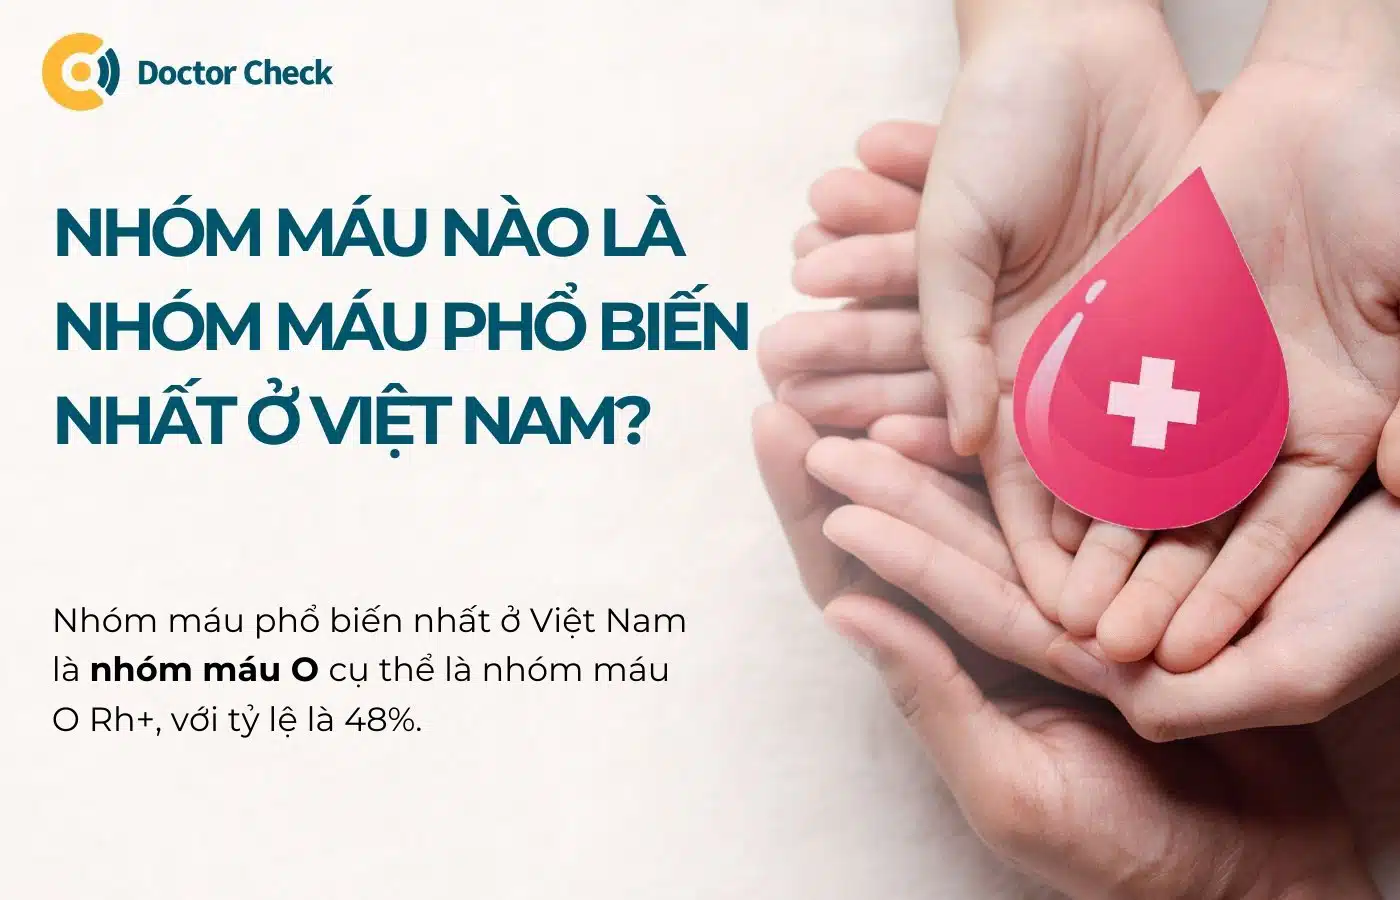 Nhóm máu nào là nhóm máu phổ biến nhất ở Việt Nam?